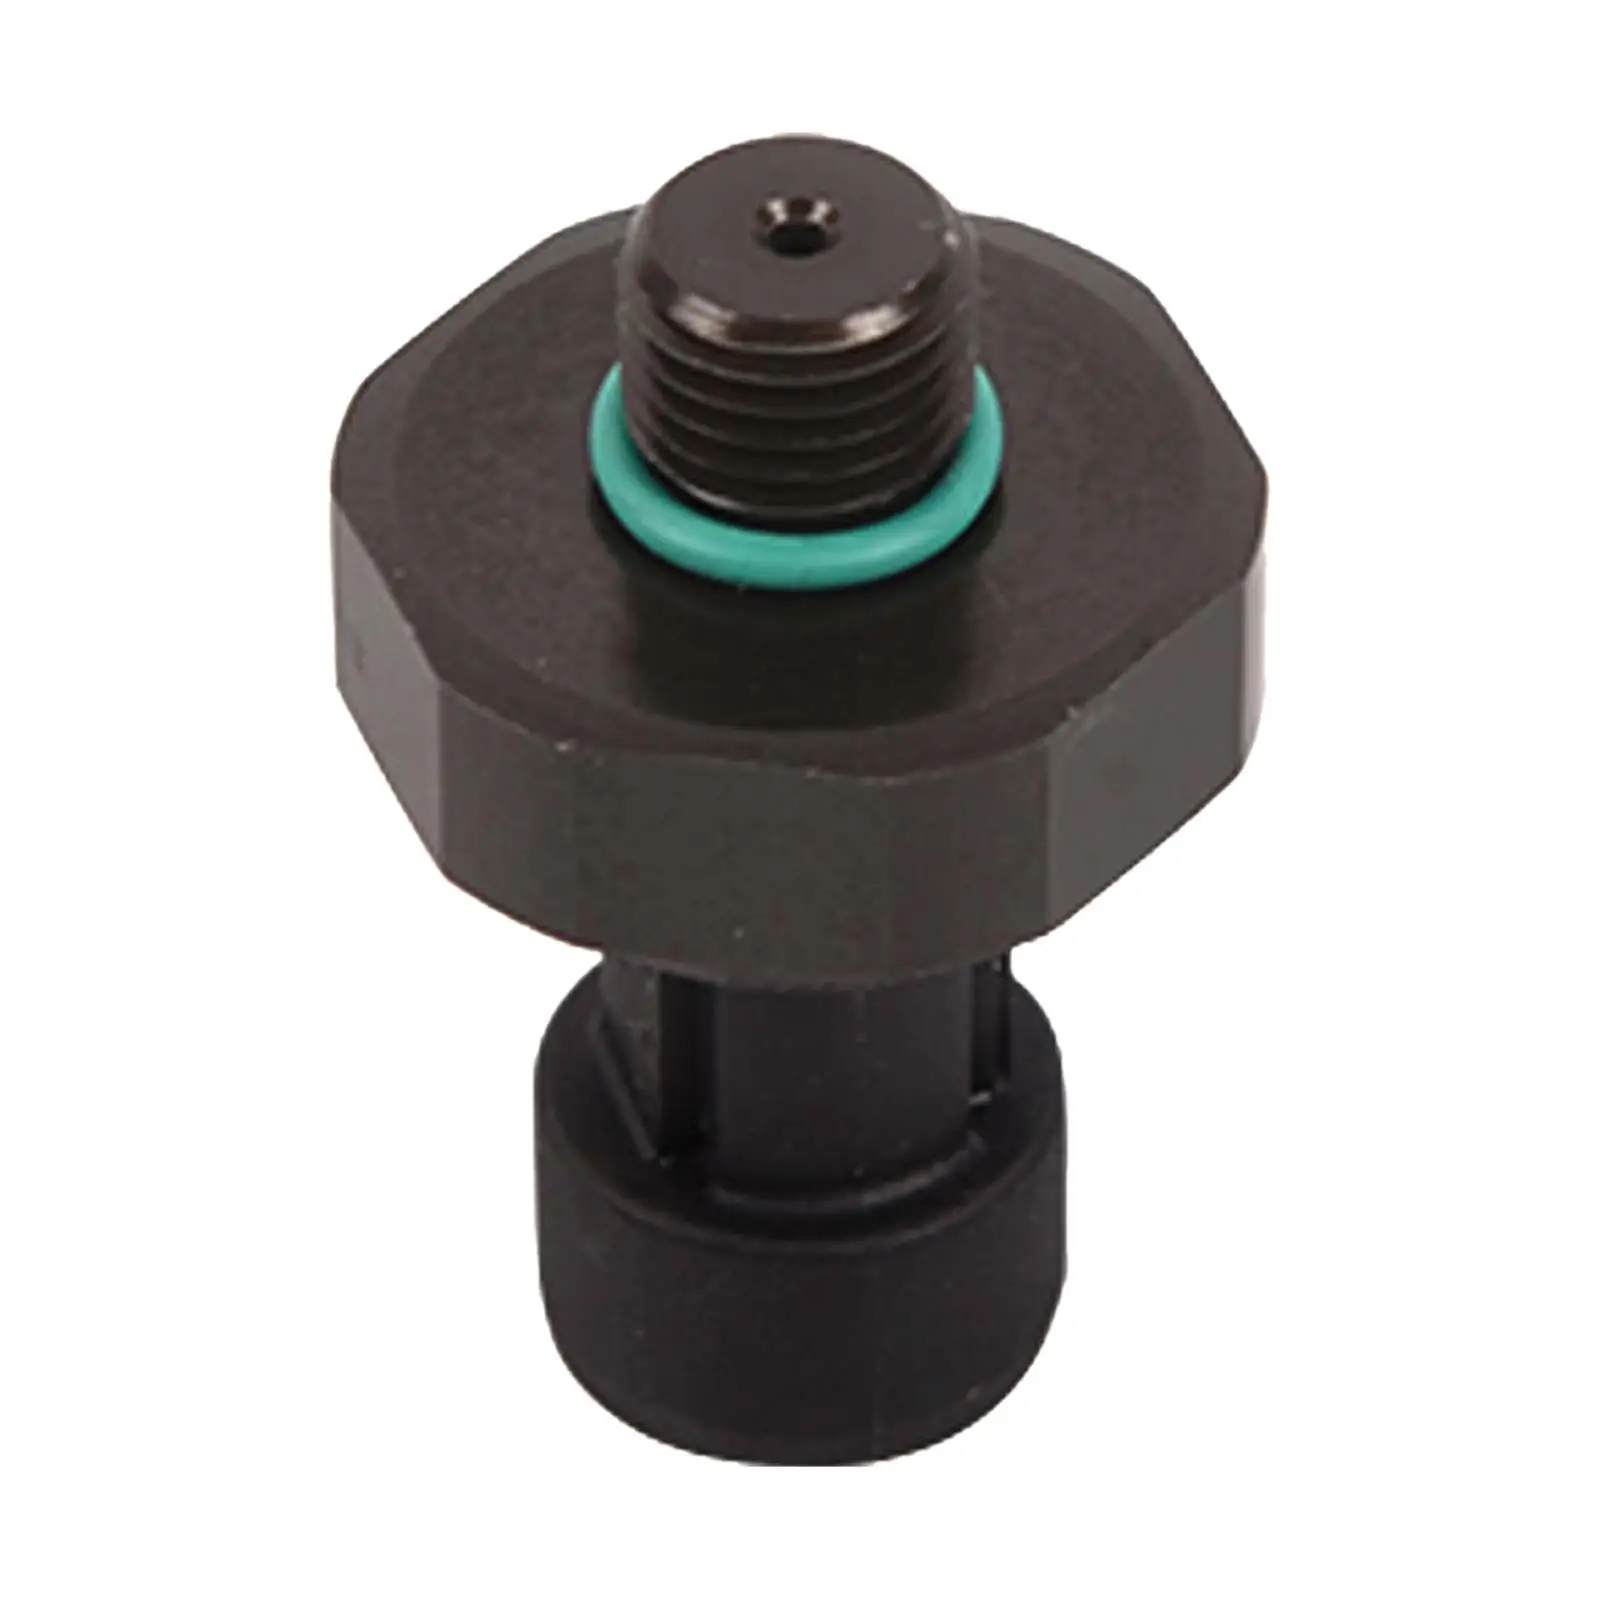 Oil Pressure Sensor 8513826, Automobile Pressure Sensor Car Auto Accessories for